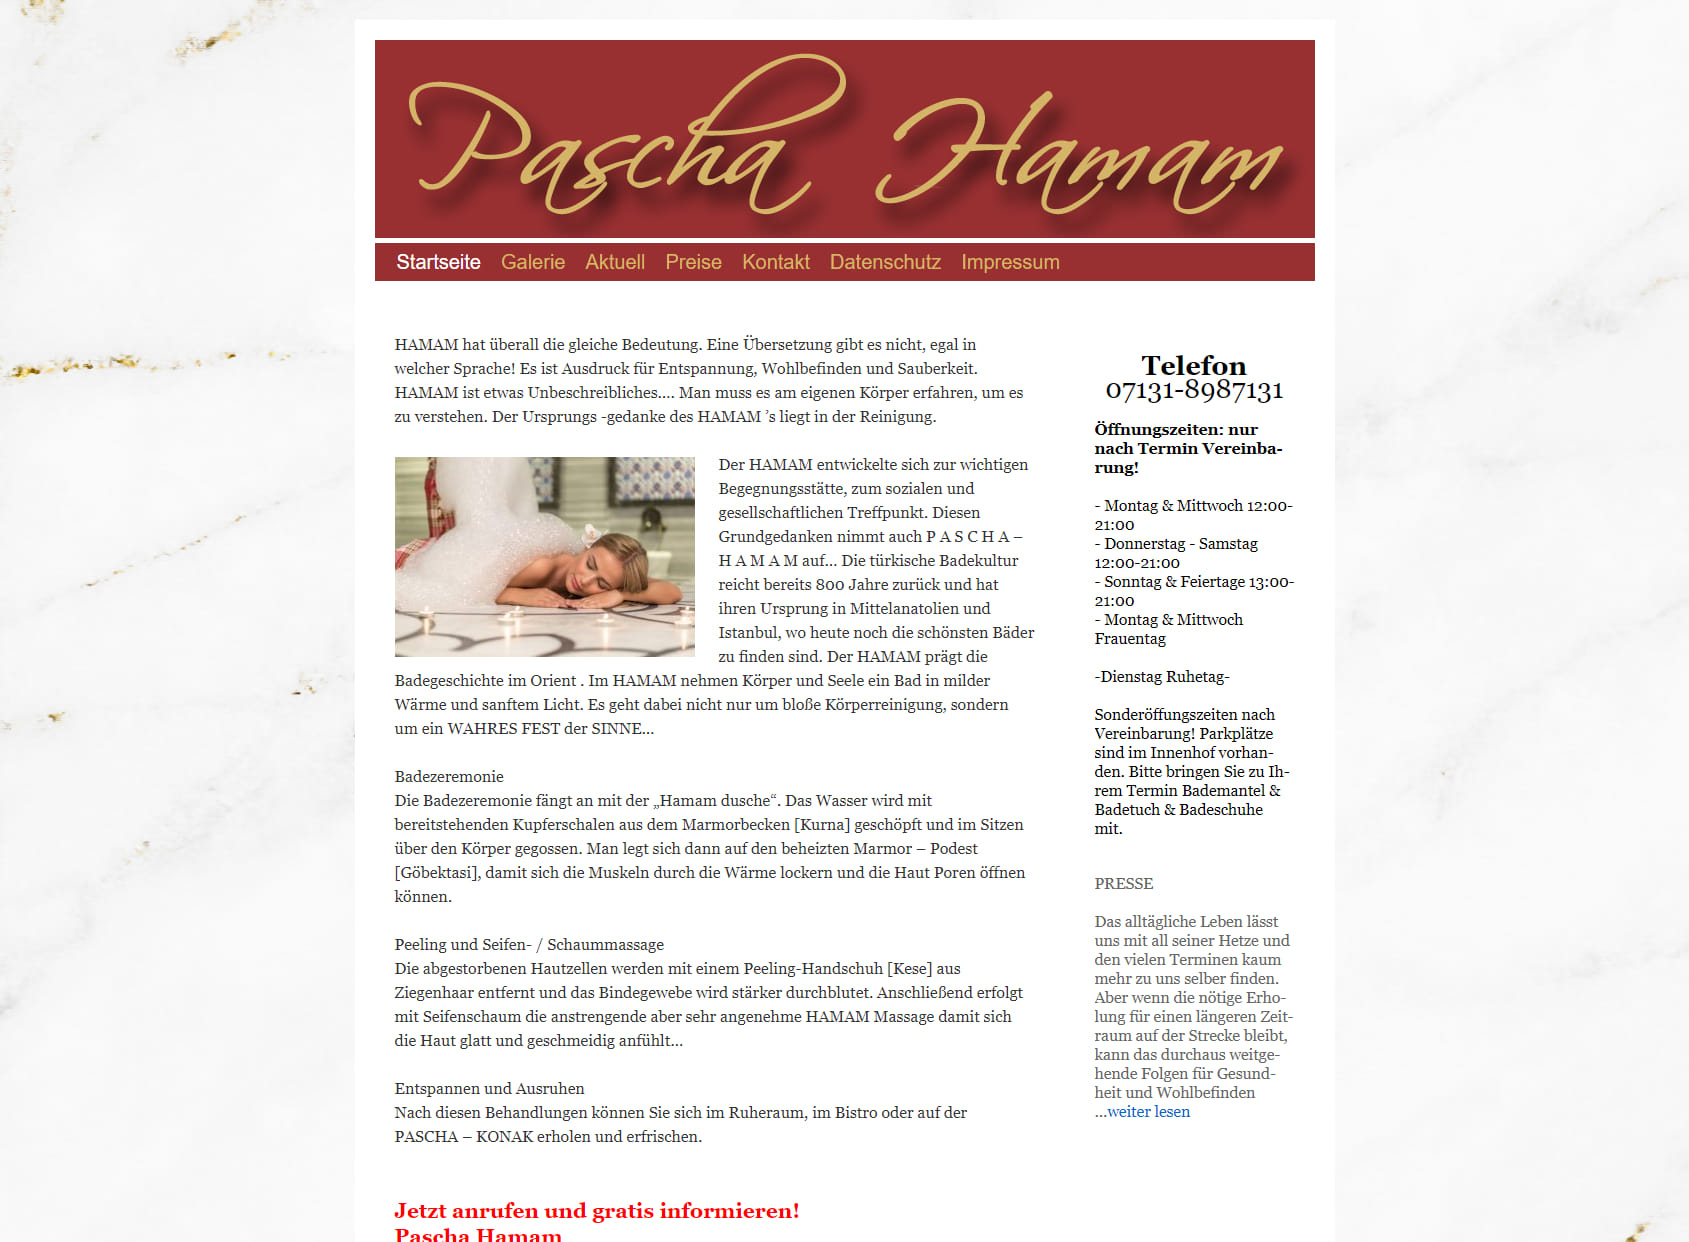 Massage - Sauna - Spa - Heilbronn PASCHA HAMAM